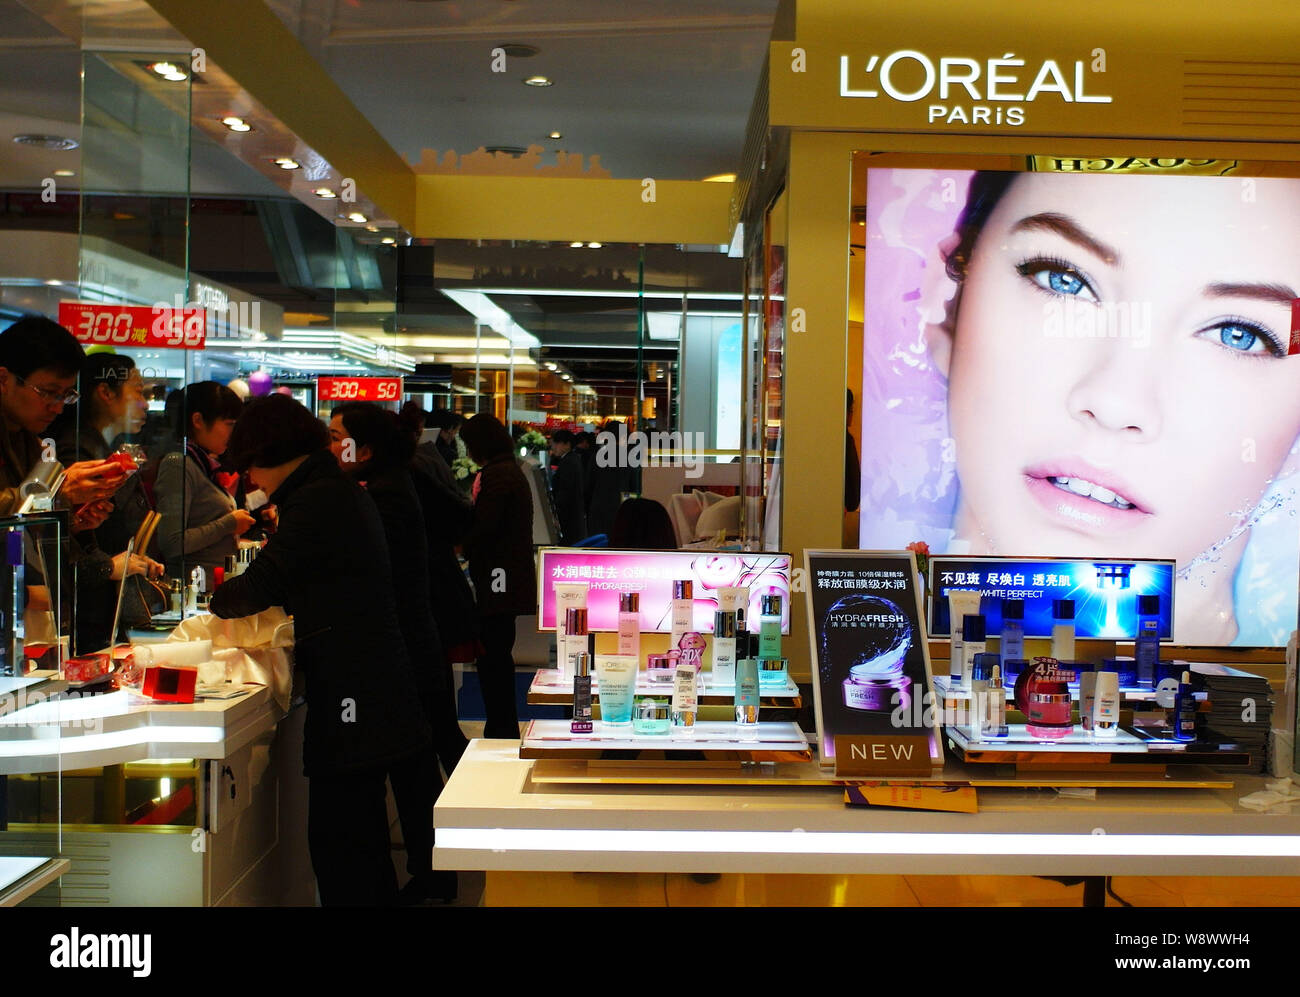 Kunden shop für LOreal Paris Kosmetik und Hautpflegeprodukte in einem  Einkaufszentrum in Yichang City, Central China Provinz Hubei, 8. März 201  Stockfotografie - Alamy